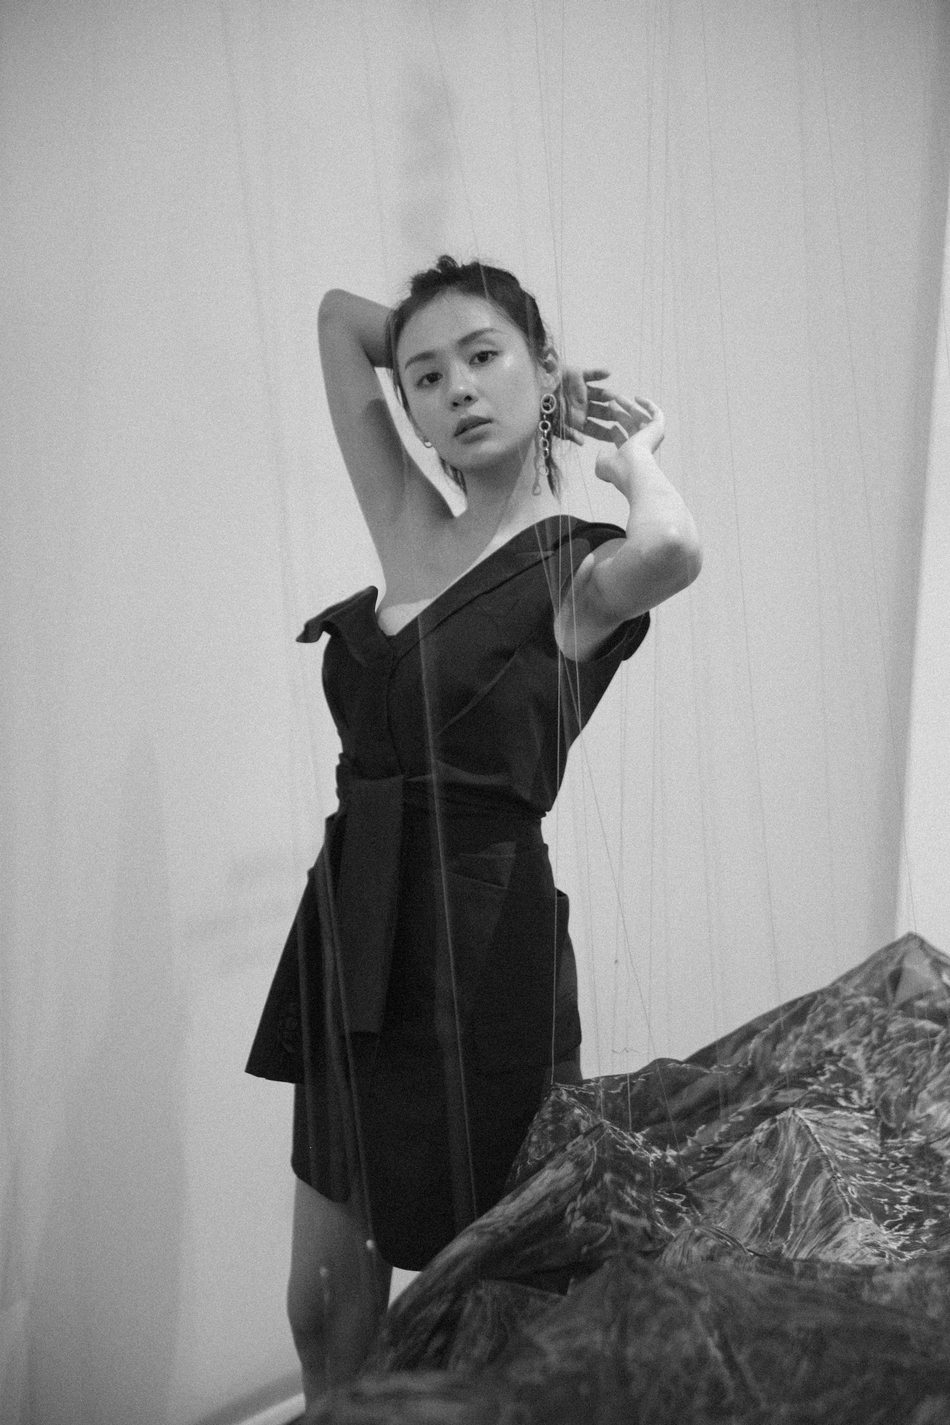 郑合惠子身着黑裙搭配高马尾 装束攻气十足 这样的她你爱吗